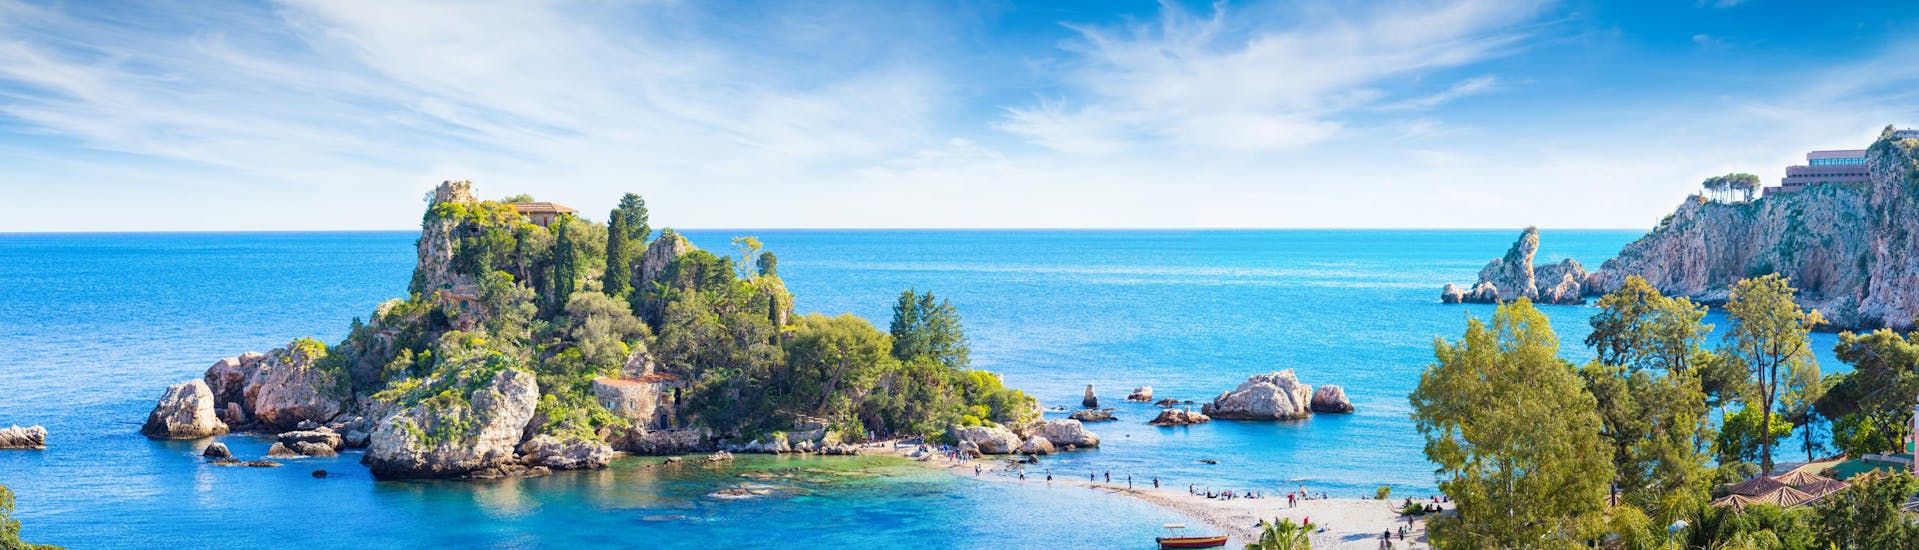 Panoramablick auf die Isola Bella, eine kleine Insel in der Nähe von Taormina, Sizilien, Italien.